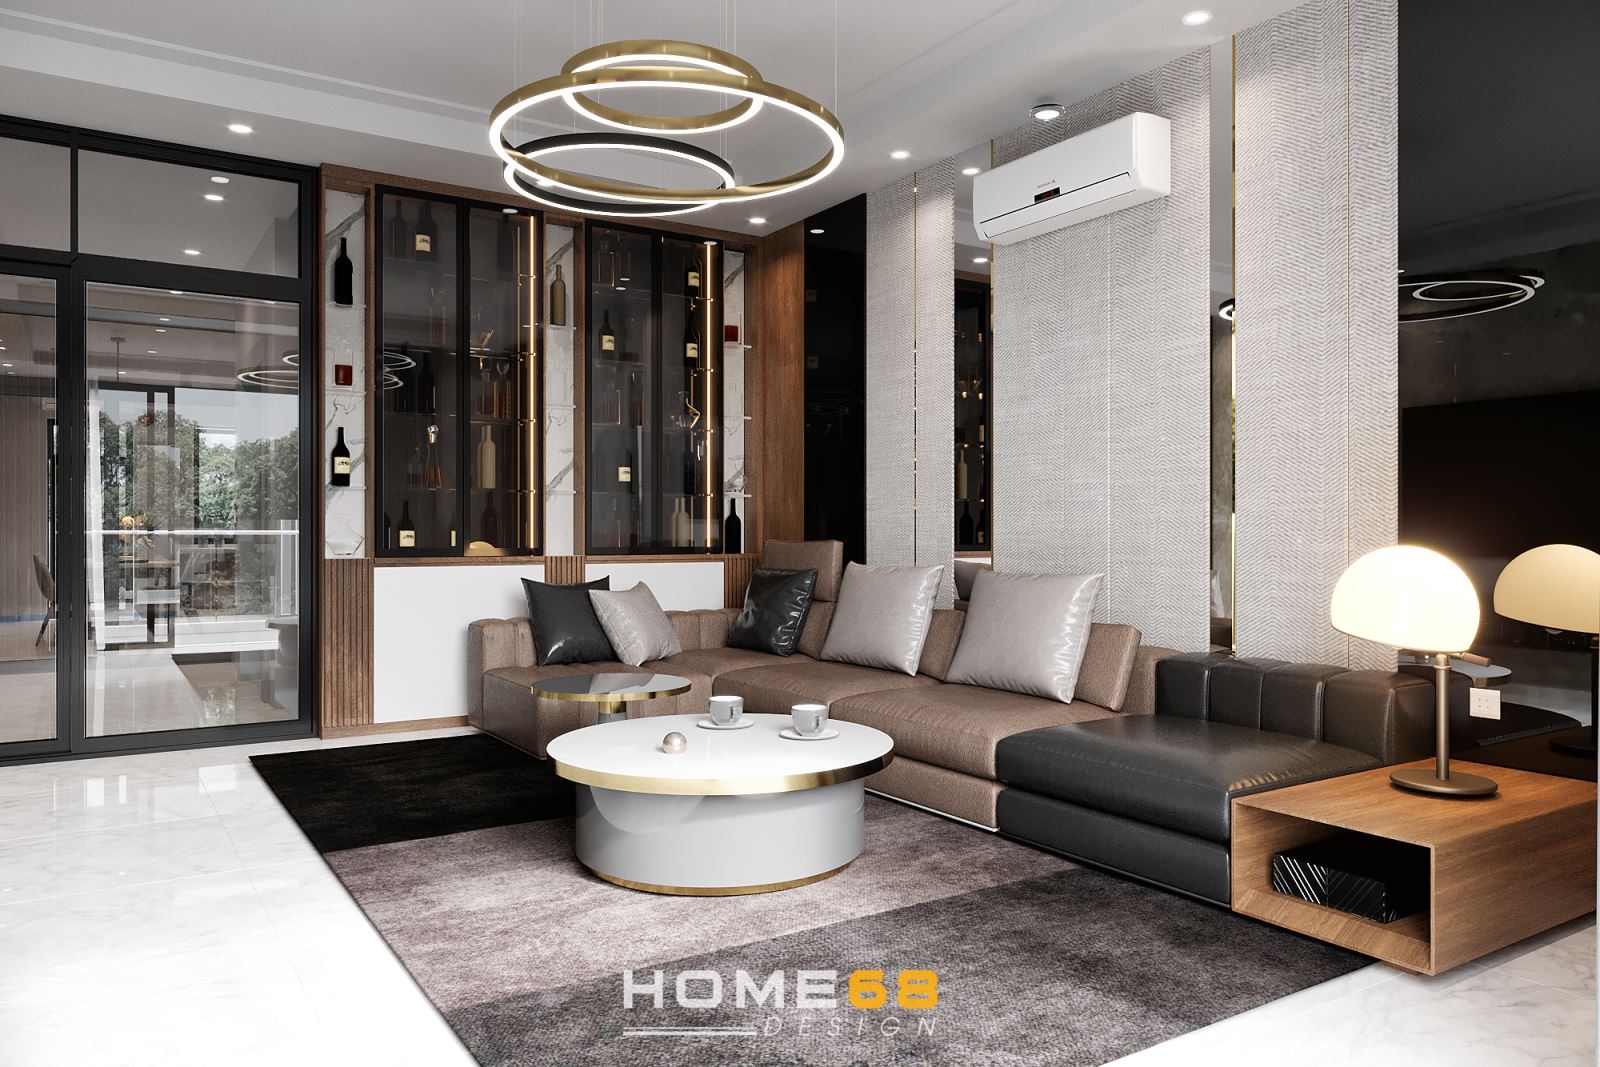 HOME68 thiết kế nội thất phòng khách hiện đại, ấn tượng Hải Phòng